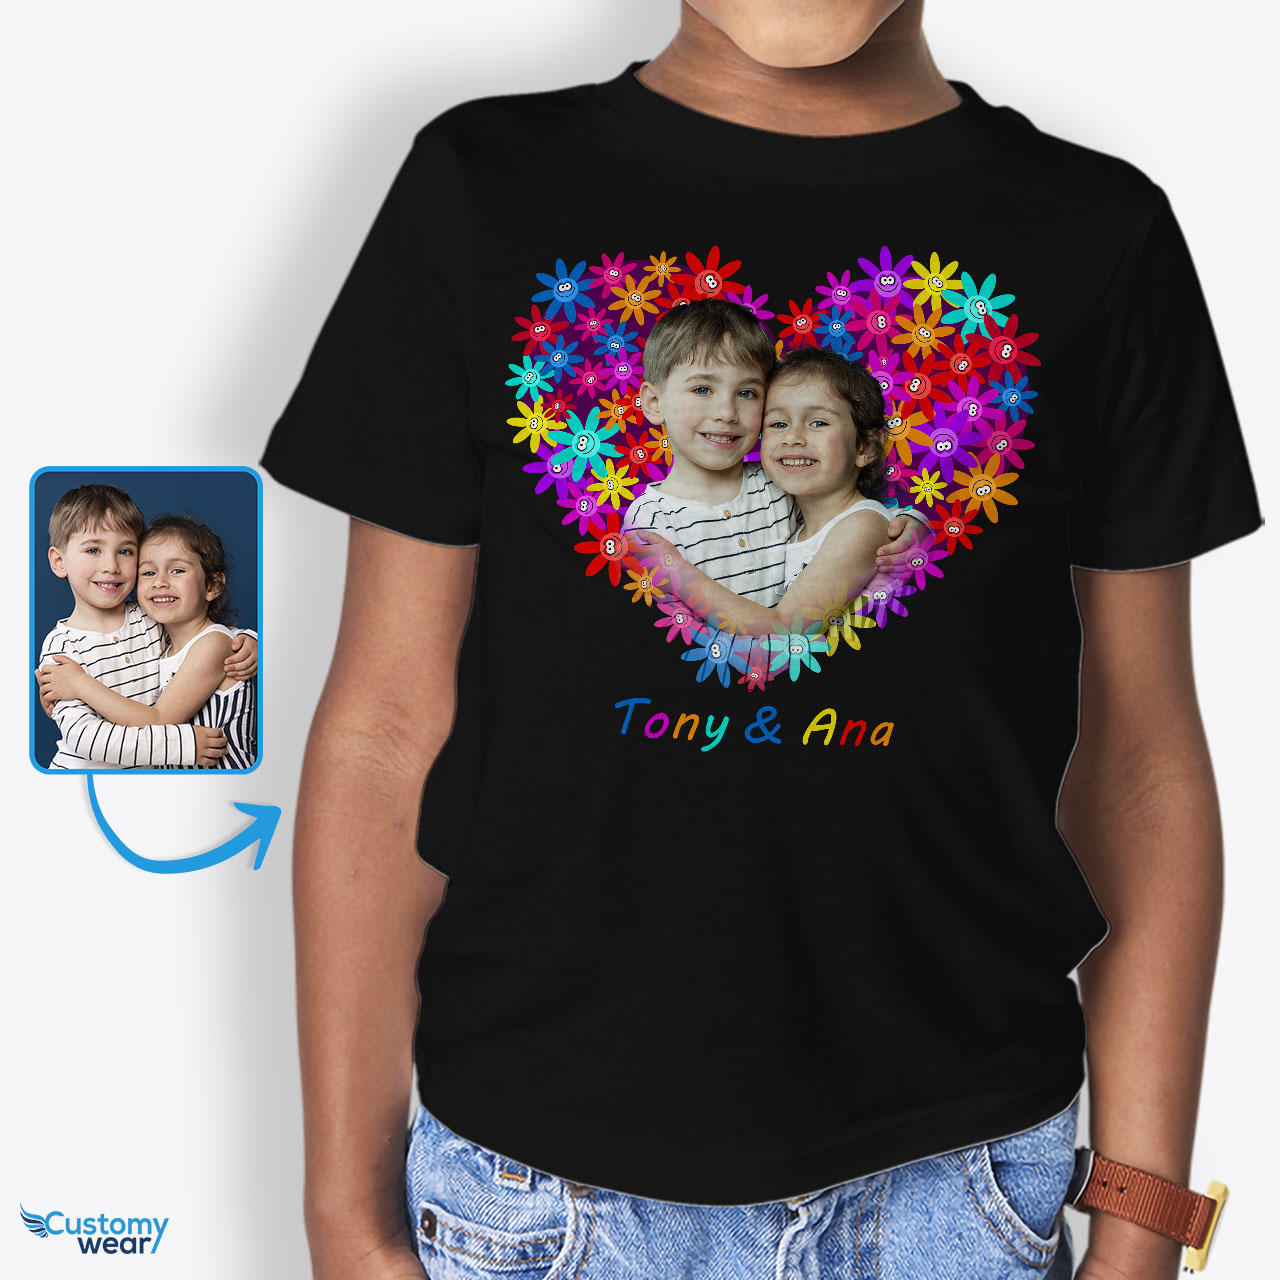 Idee regalo per bambini Maglietta personalizzata - Scatena la creatività  con magliette personalizzate uniche per i più piccoli - Customywear